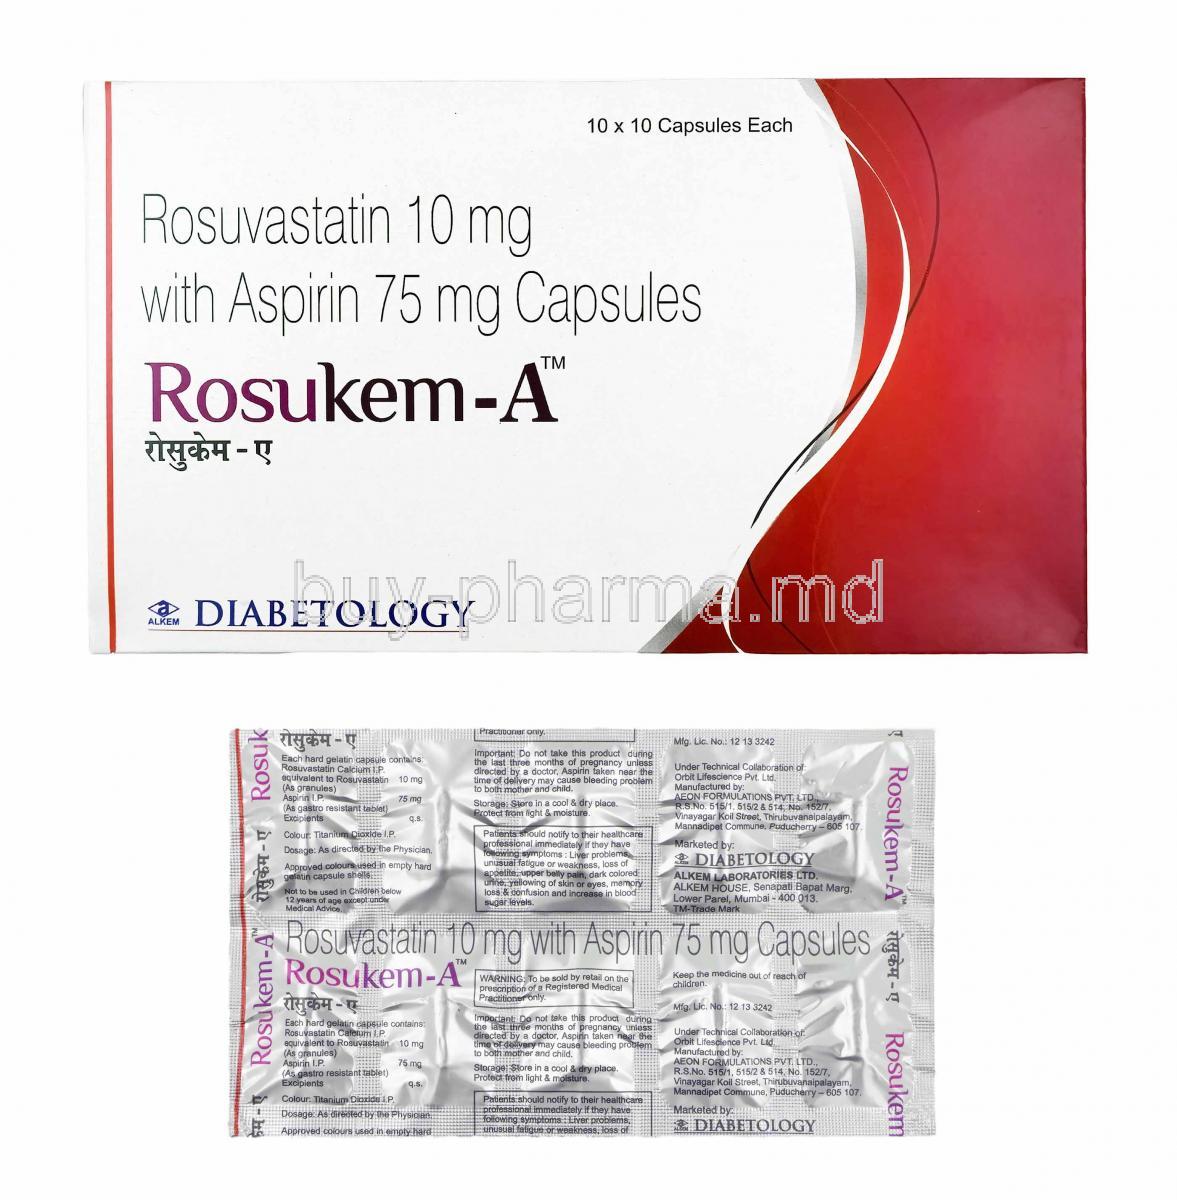 Rosukem-A, Rosuvastatin and Aspirin 75mg, box and capsules